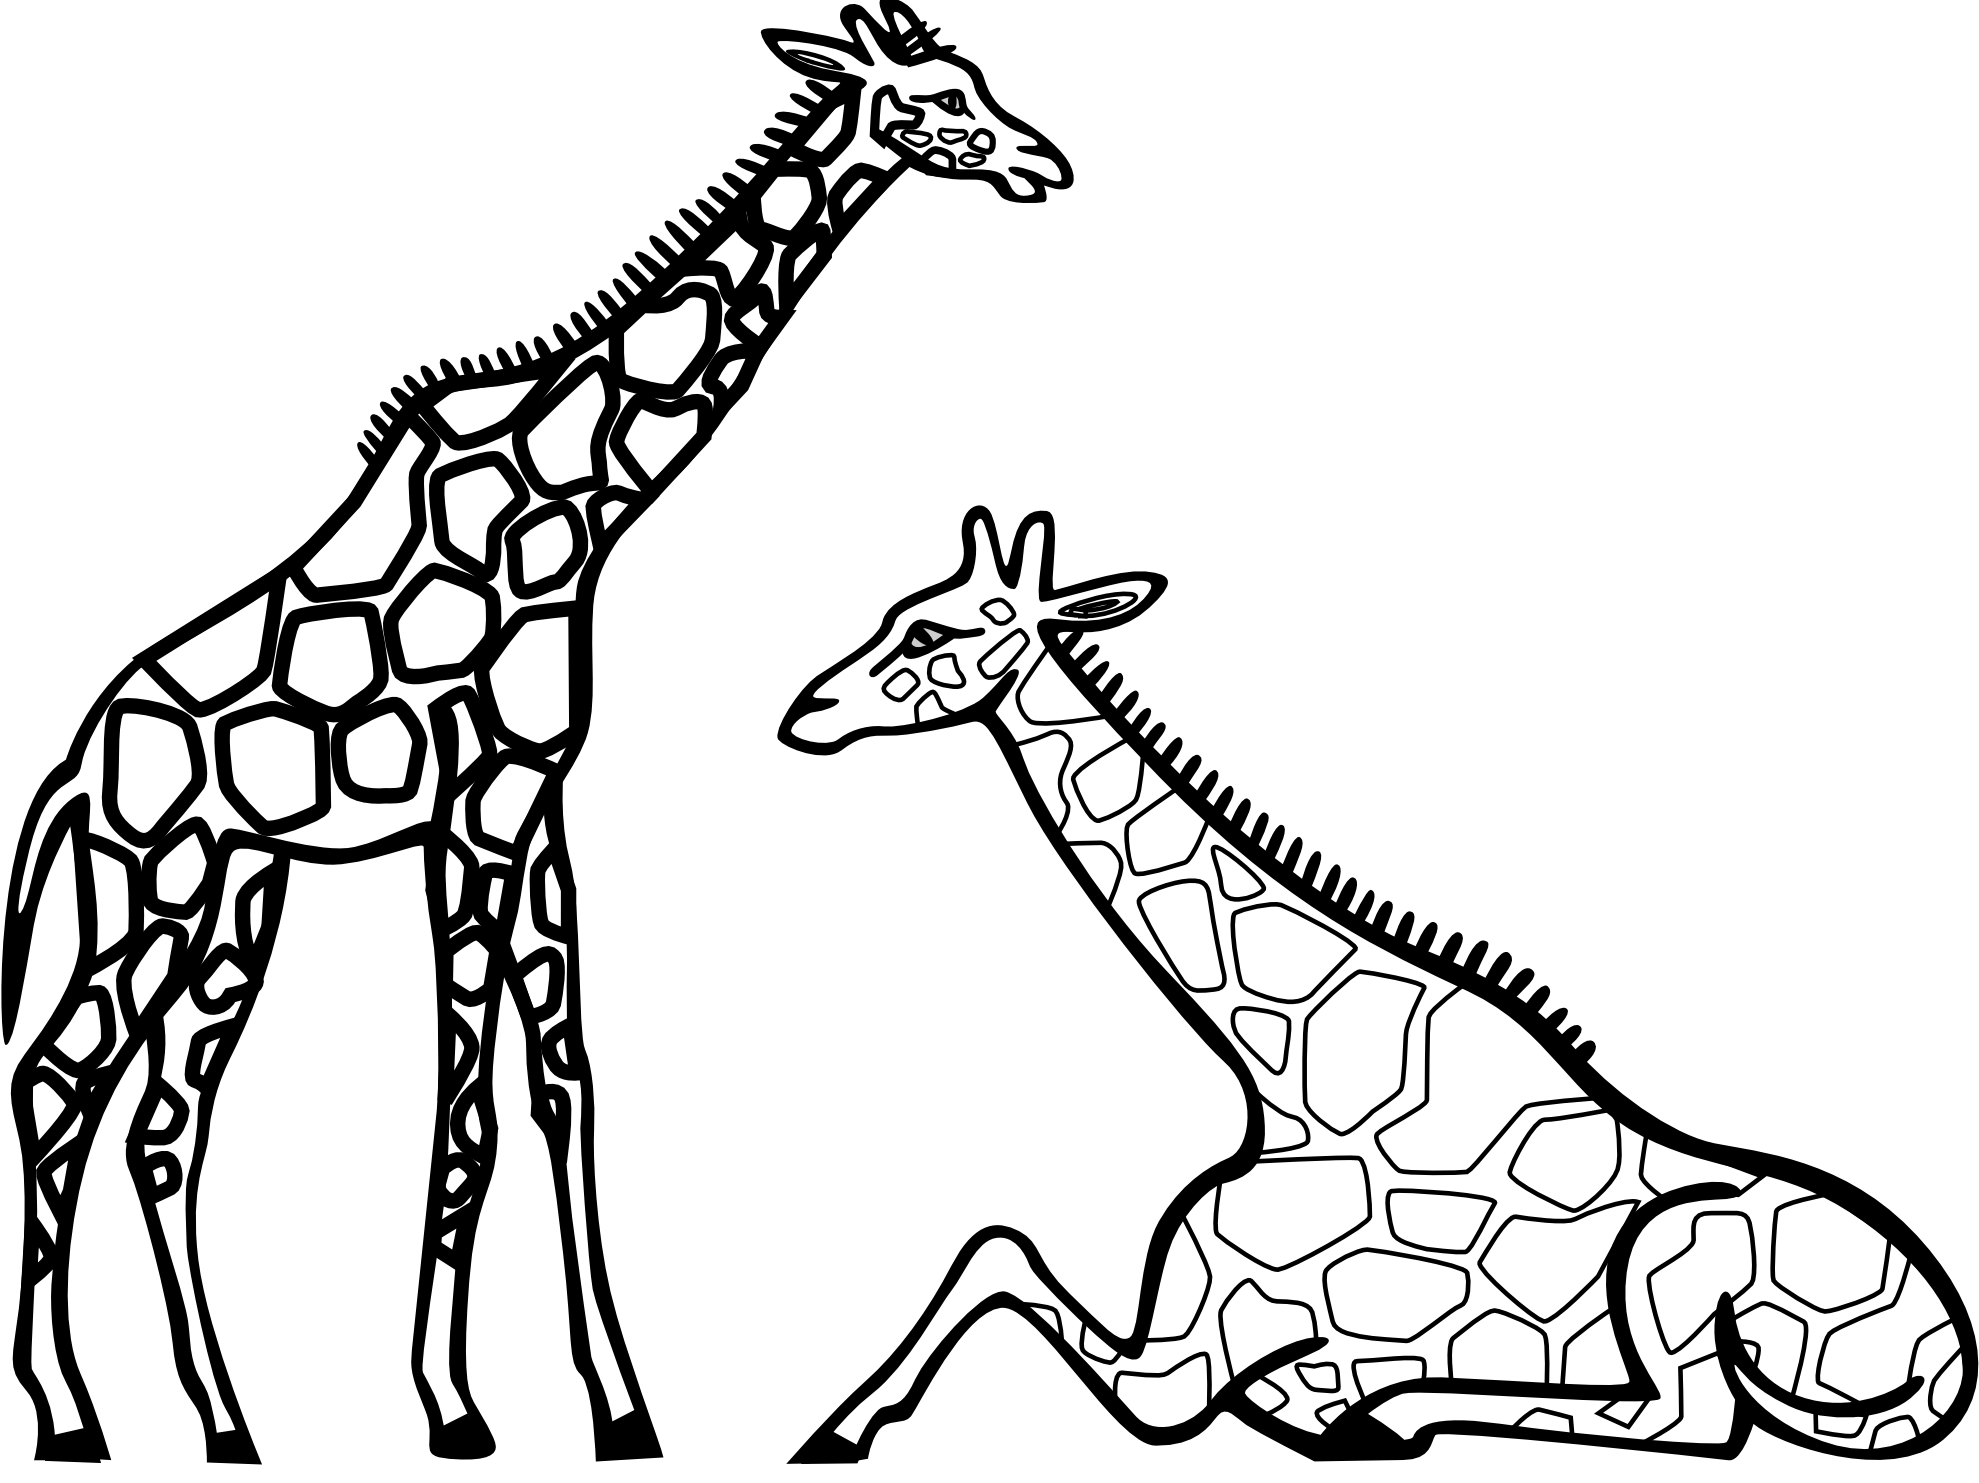 giraffe black and white outline